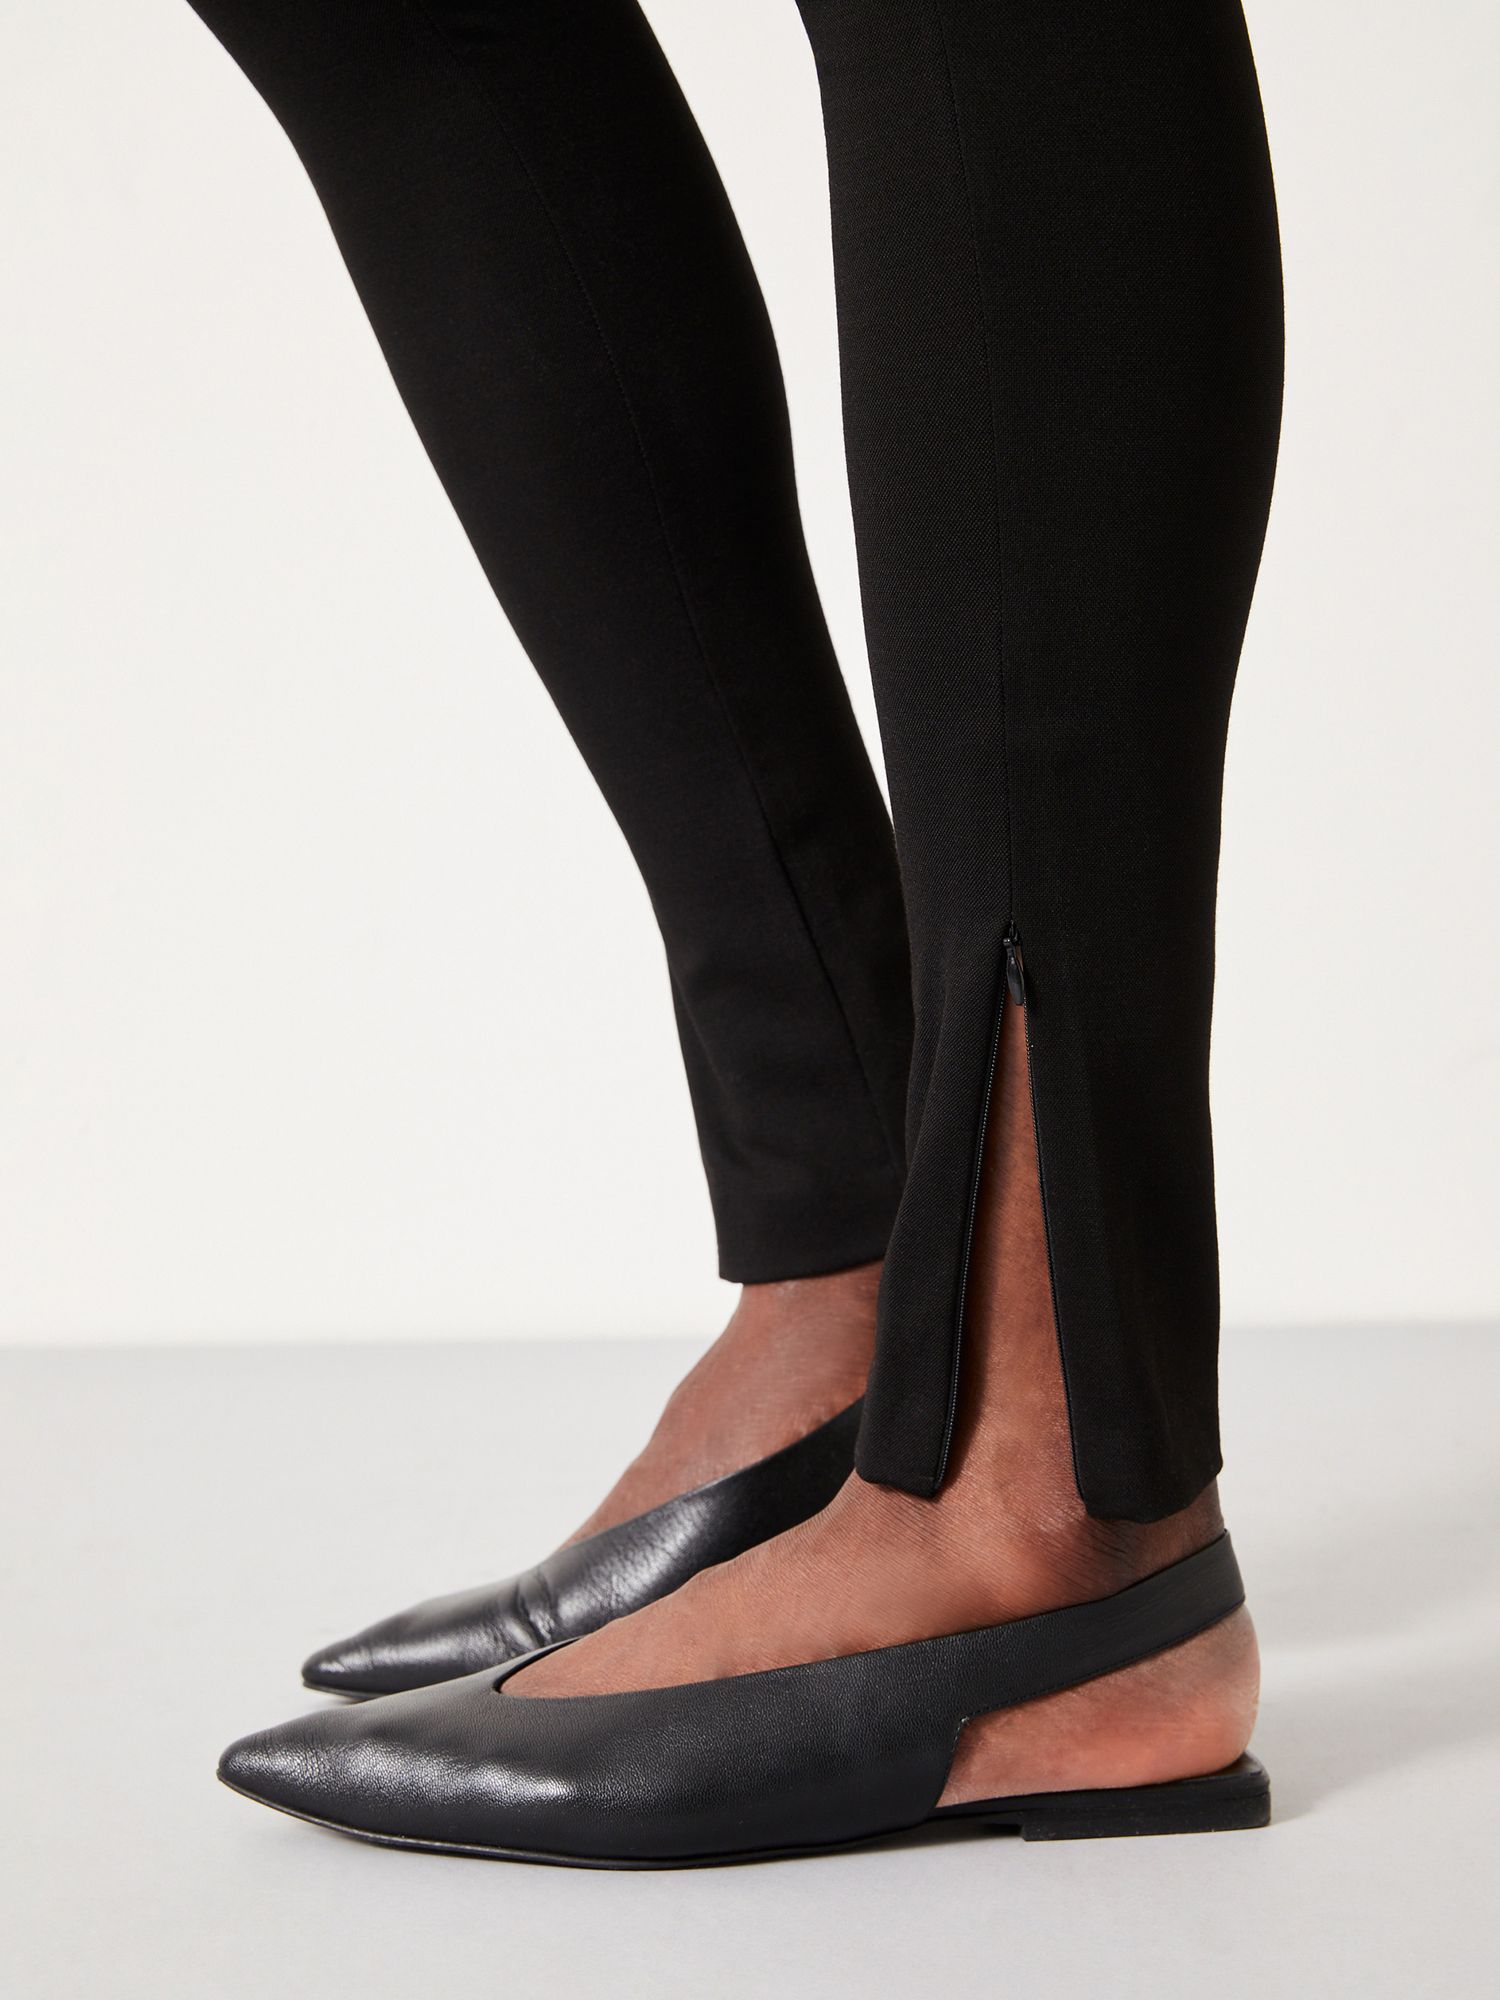 Zip Leggings in Black